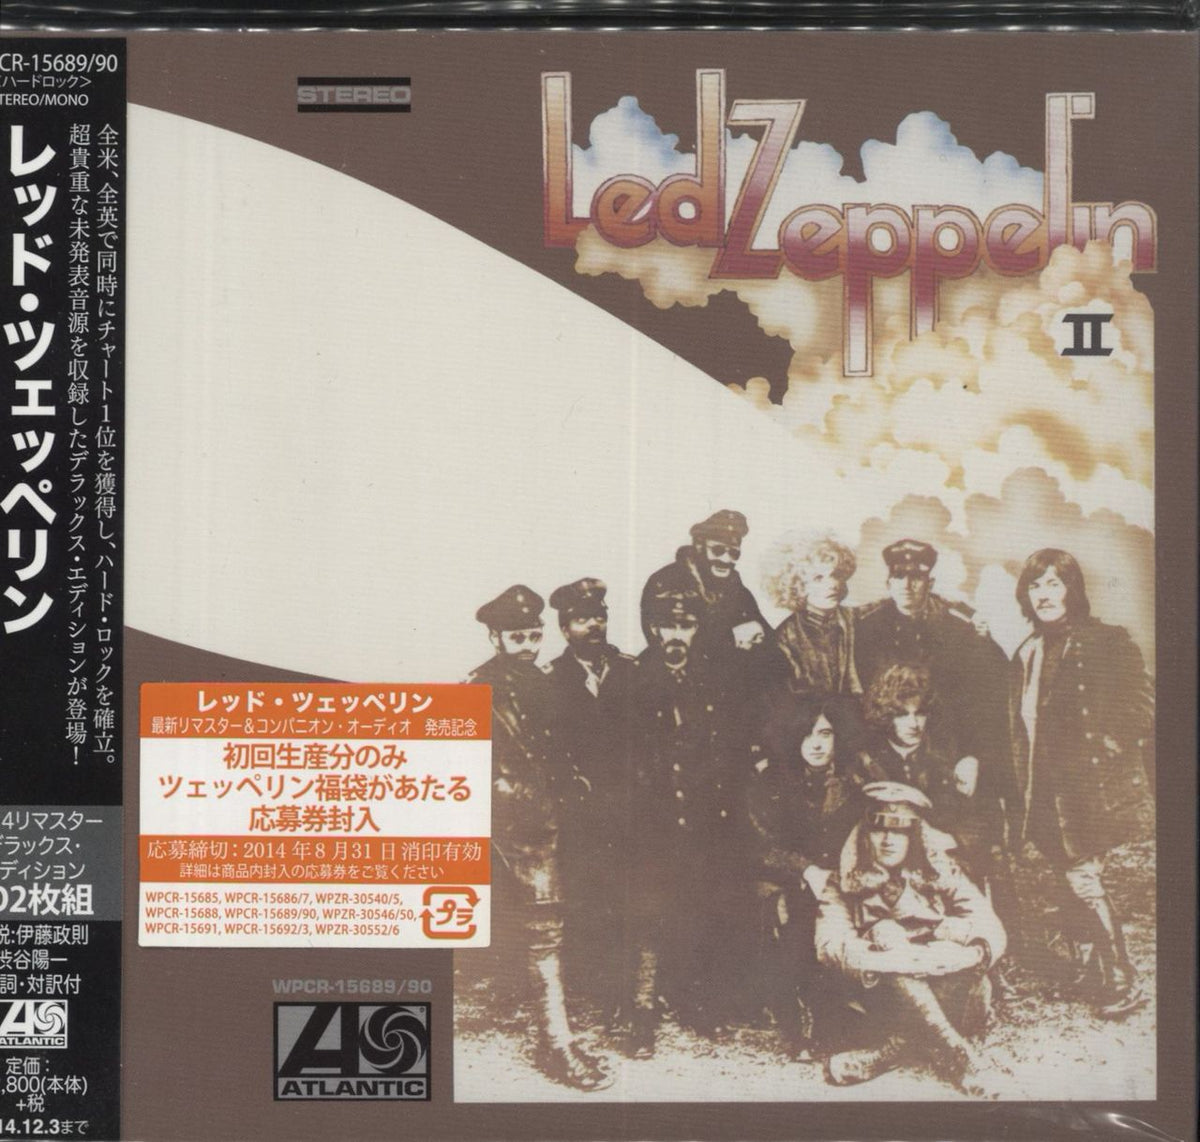 Led Zeppelin Led Zeppelin II - Deluxe Japanese 2-CD album set 